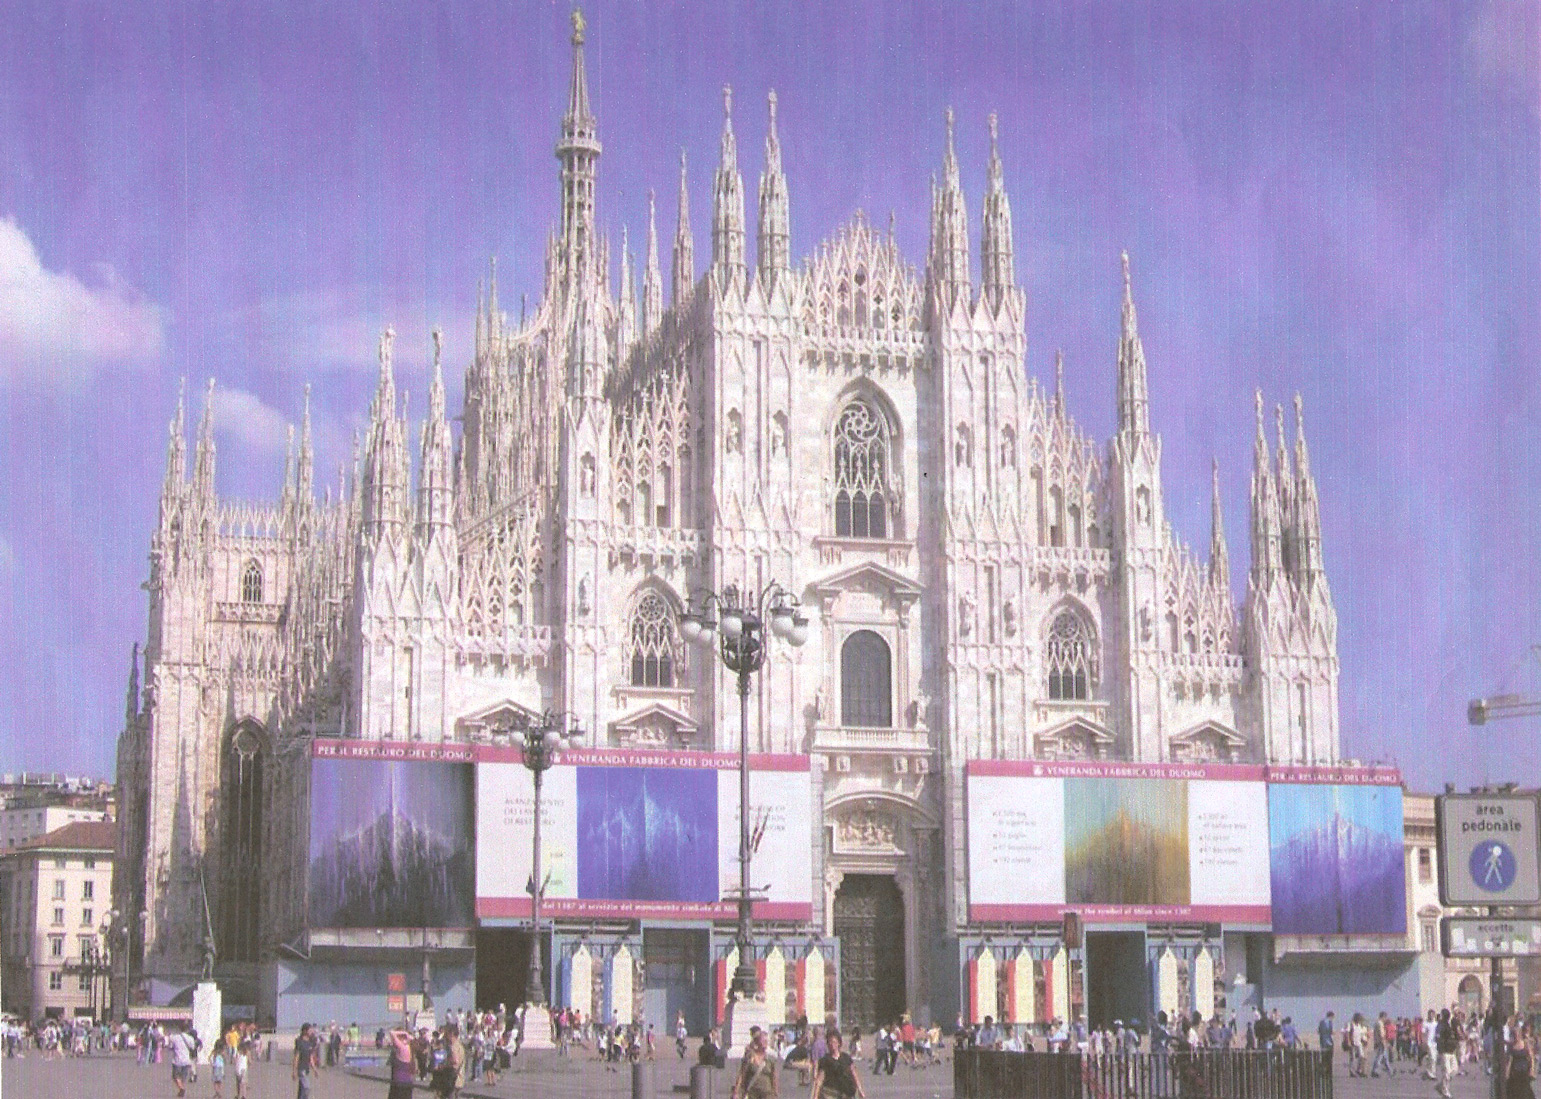  Piazza Duomo allestita con gigantografie di opere di Rodolfo Viola raffiguranti il Duomo di Milano 